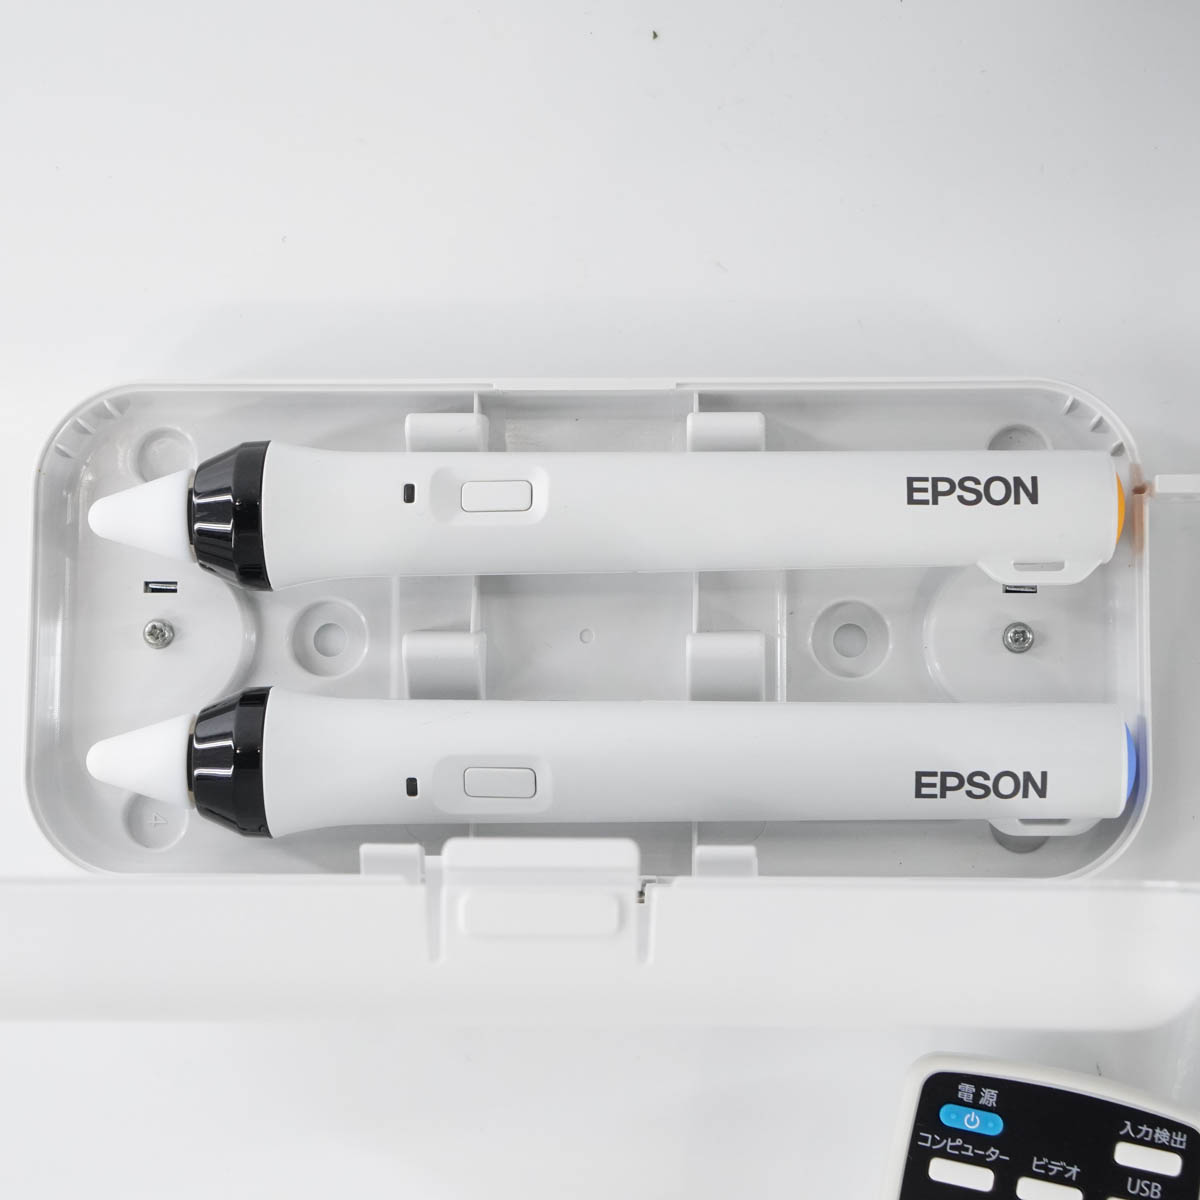 EPSON プロジェクター 電子ペンB ELPPN05B - パソコン周辺機器